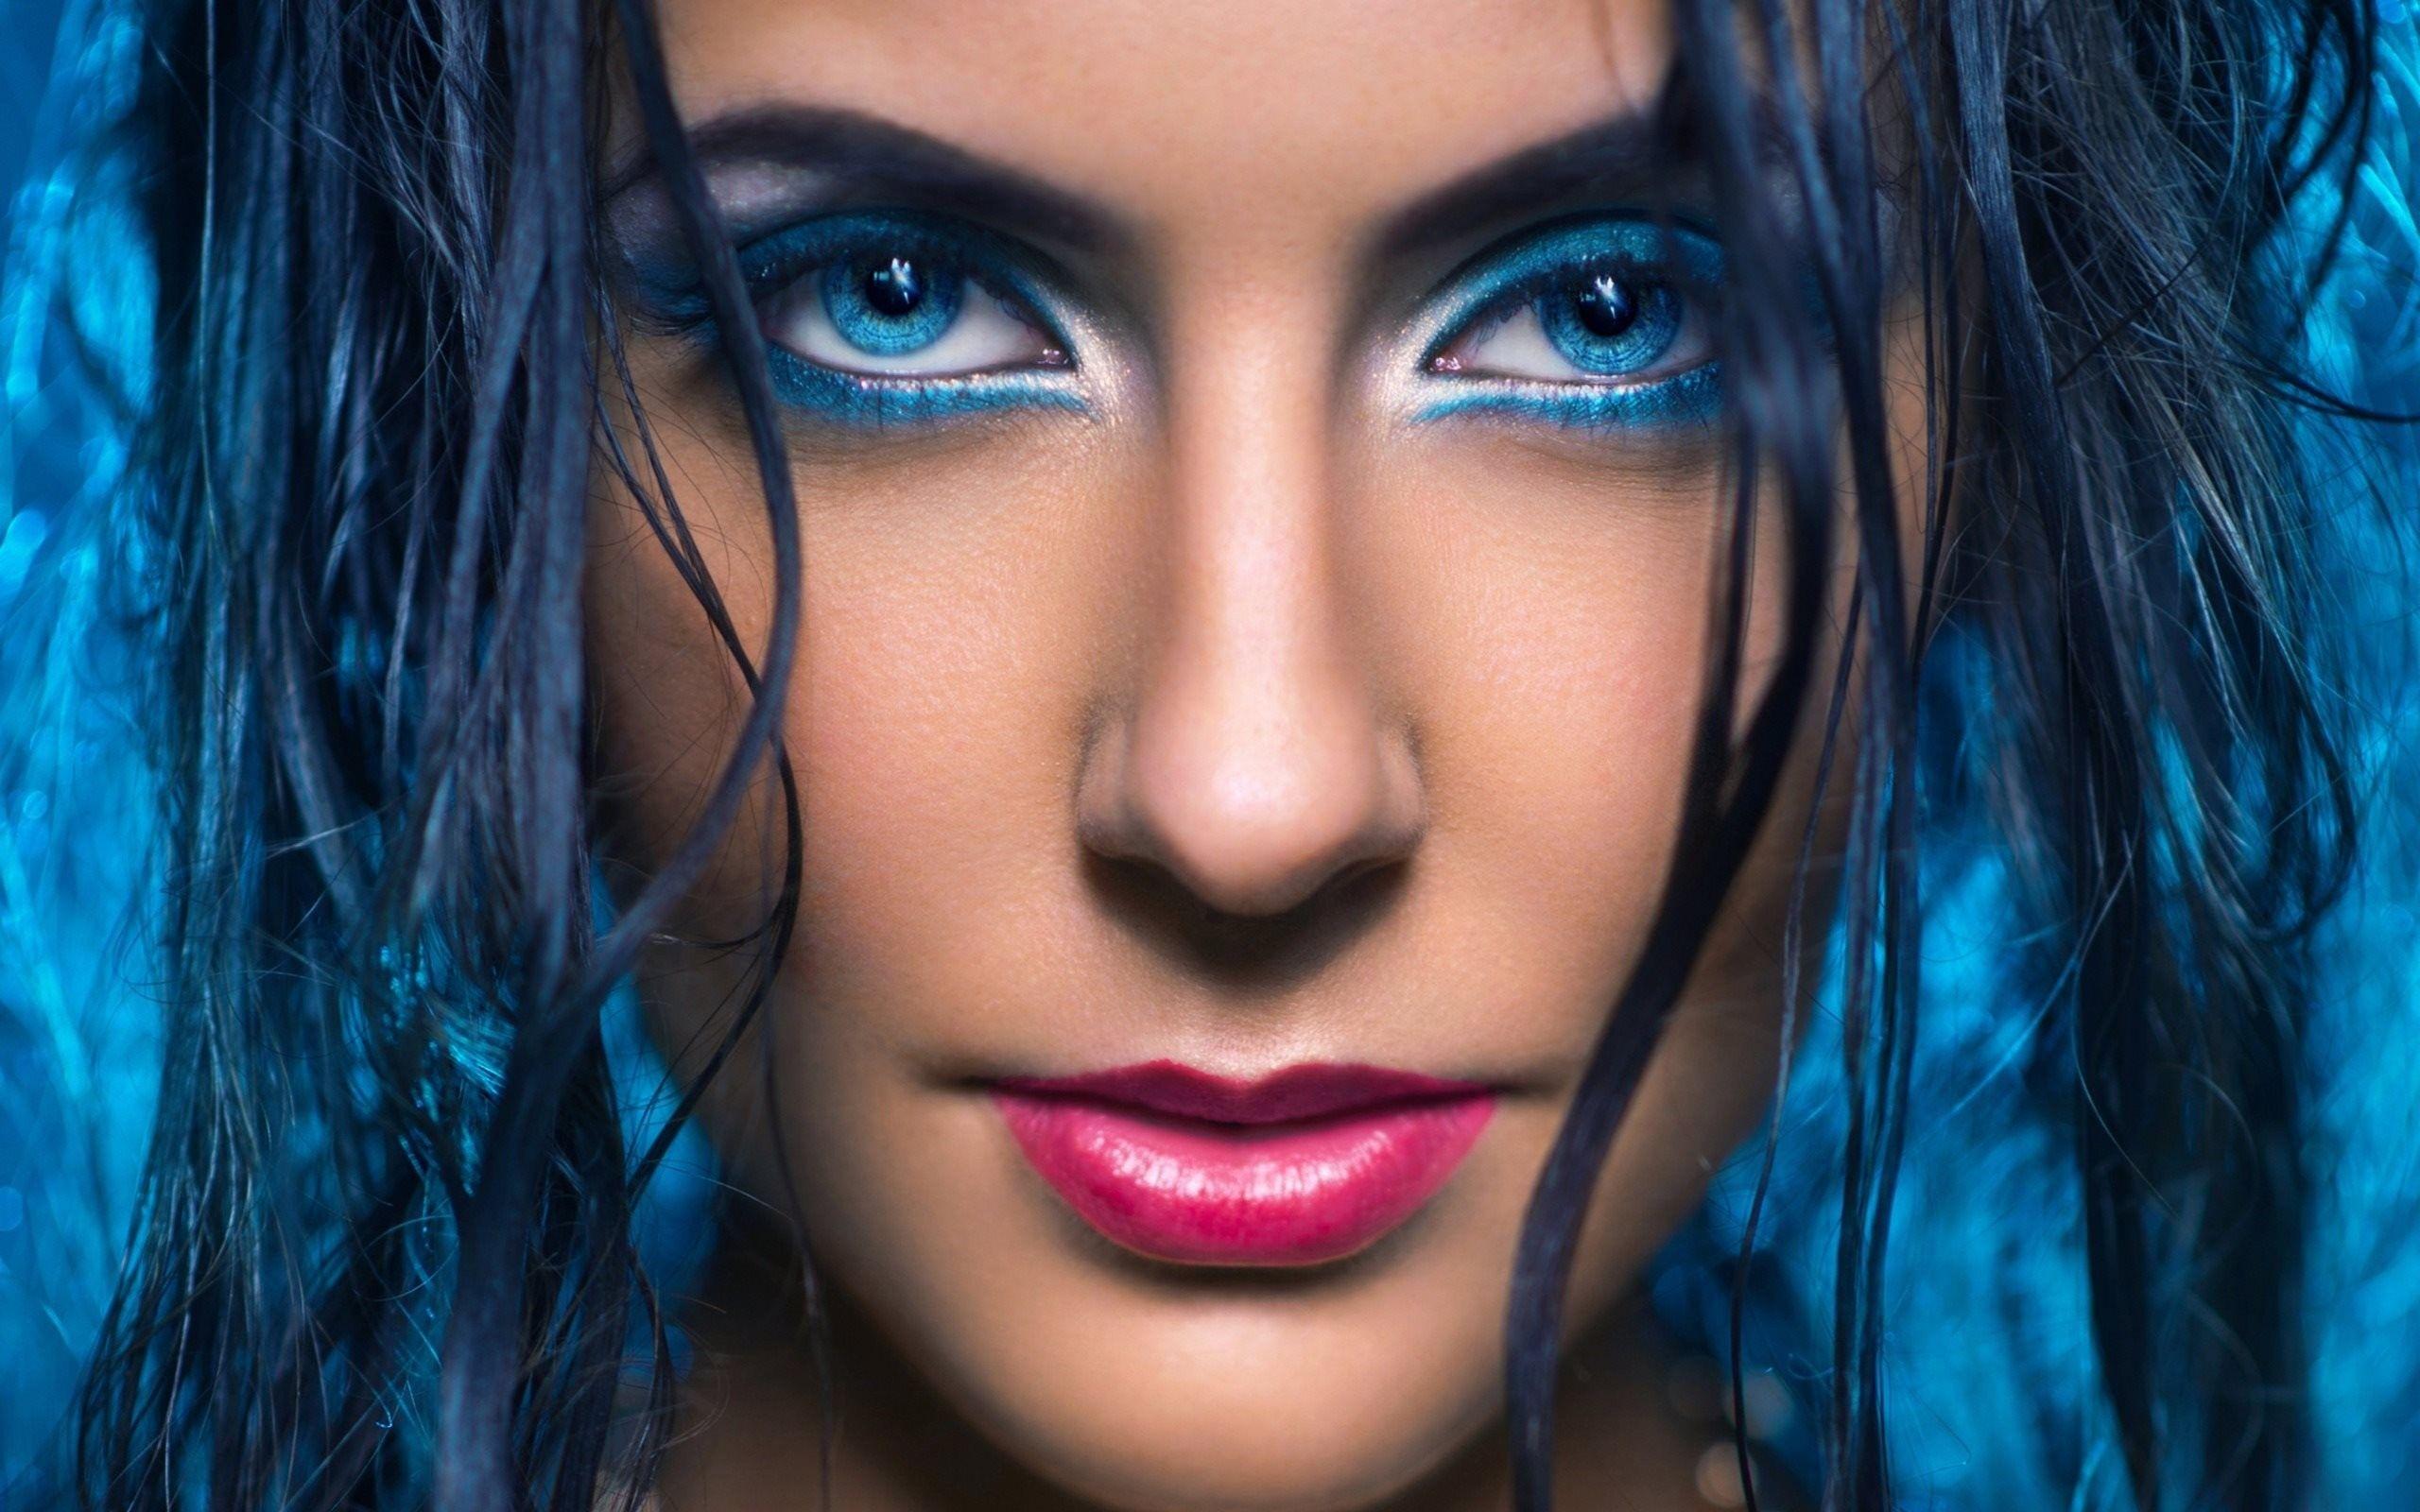 #portrait, #face, #makeup, #closeup, #women, #blue eyes